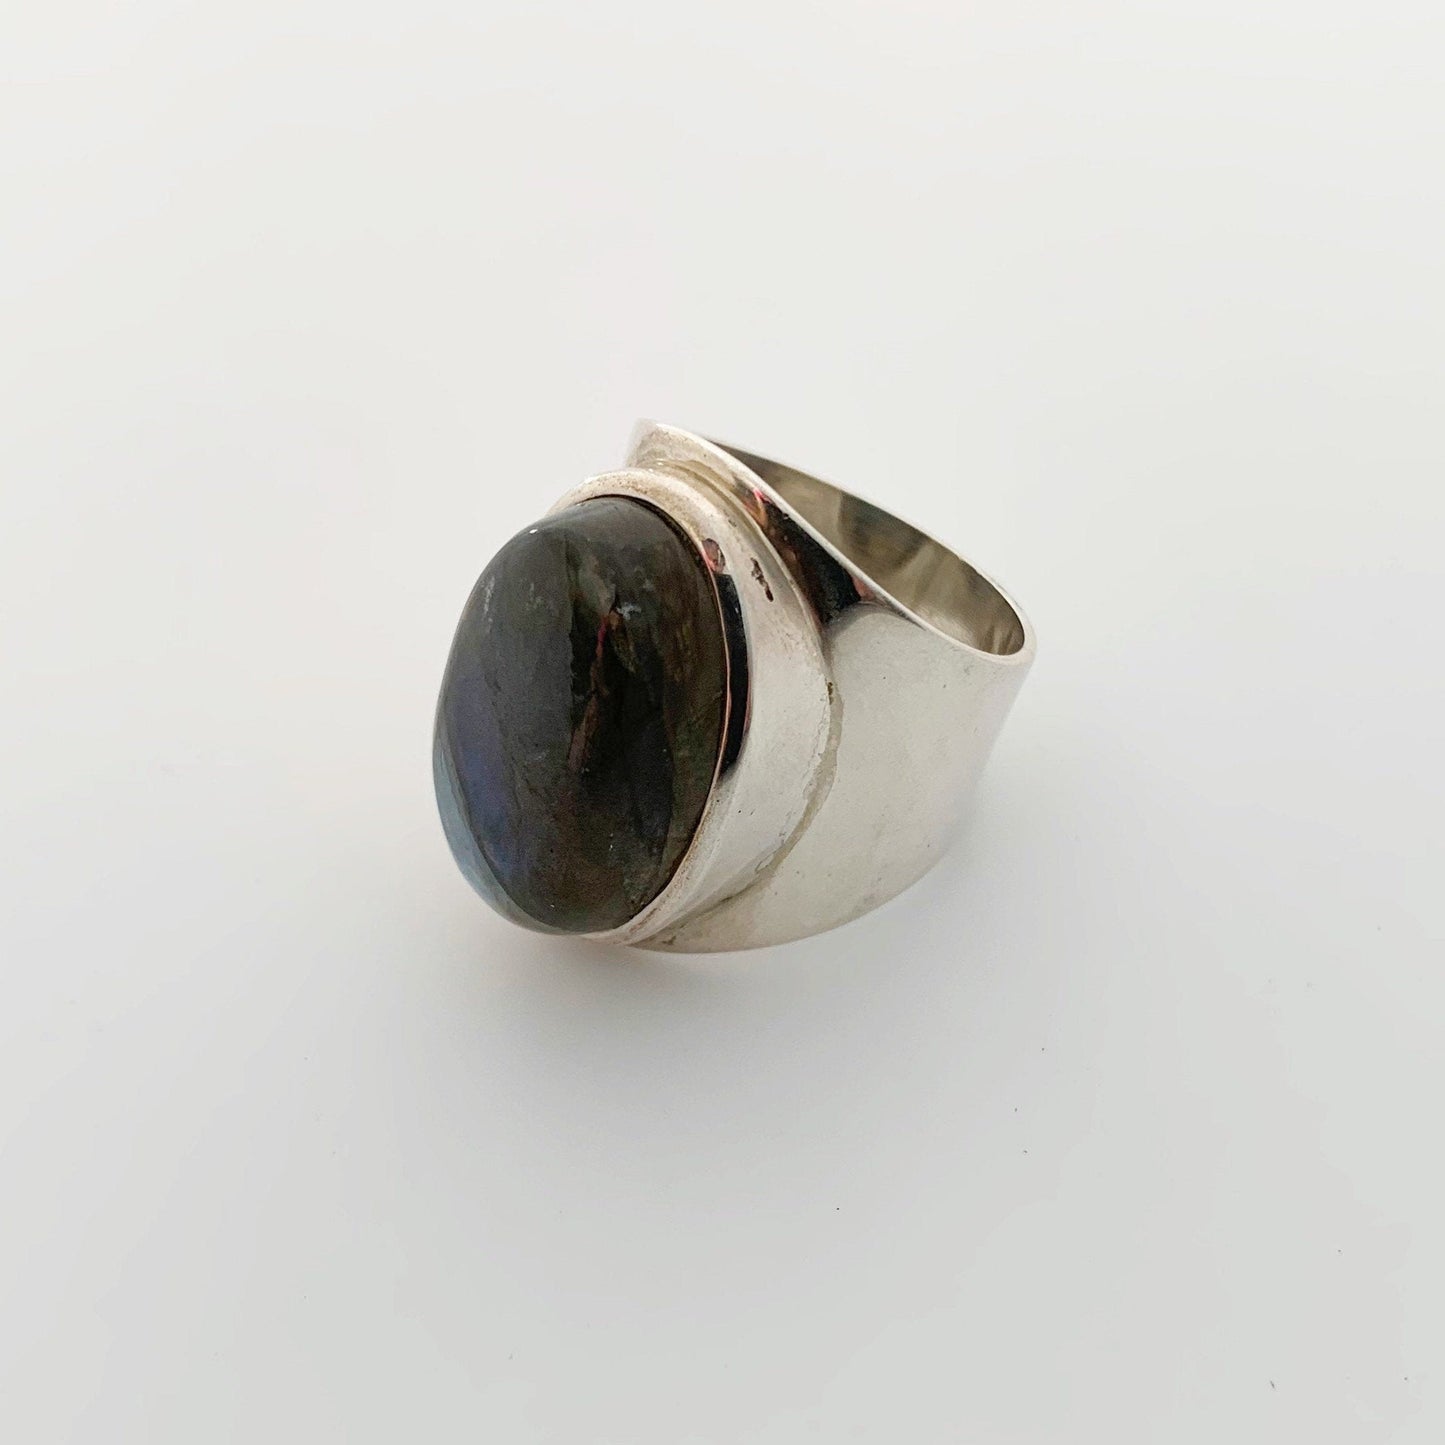 Vintage Silver Labradorite Ring | Large Labradorite Ring | Size 9 1/4 Ring